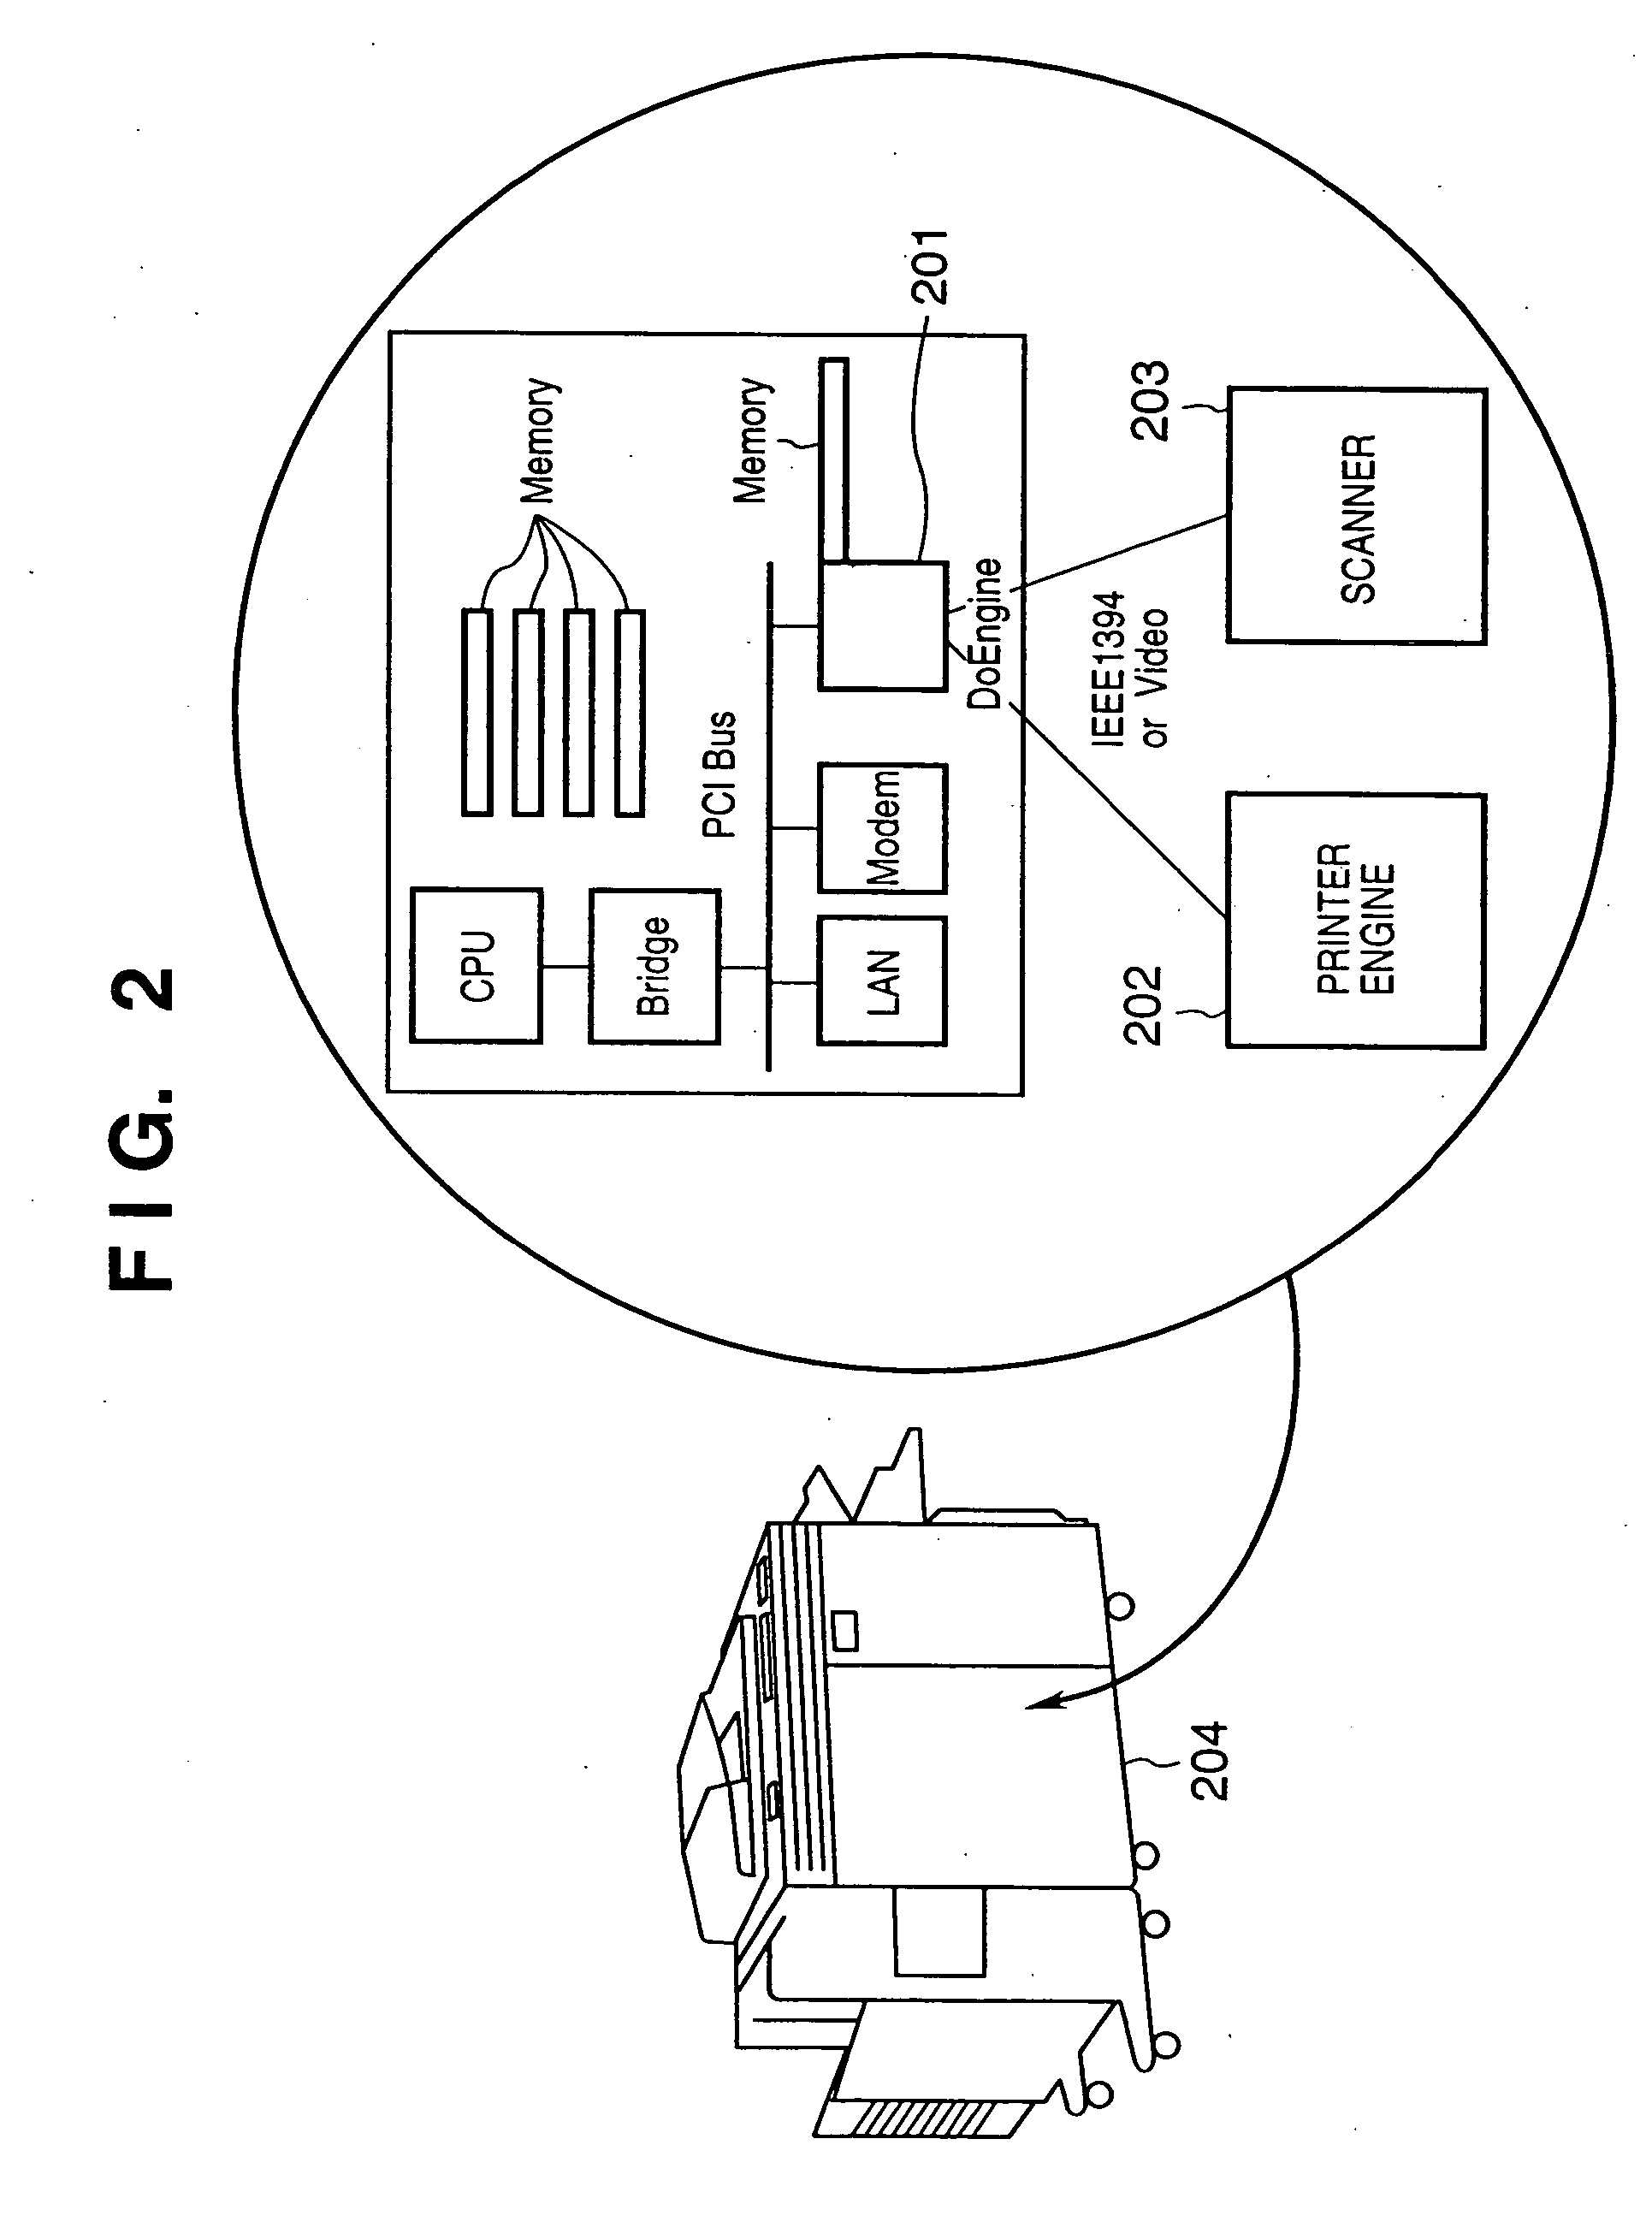 Input/output control apparatus